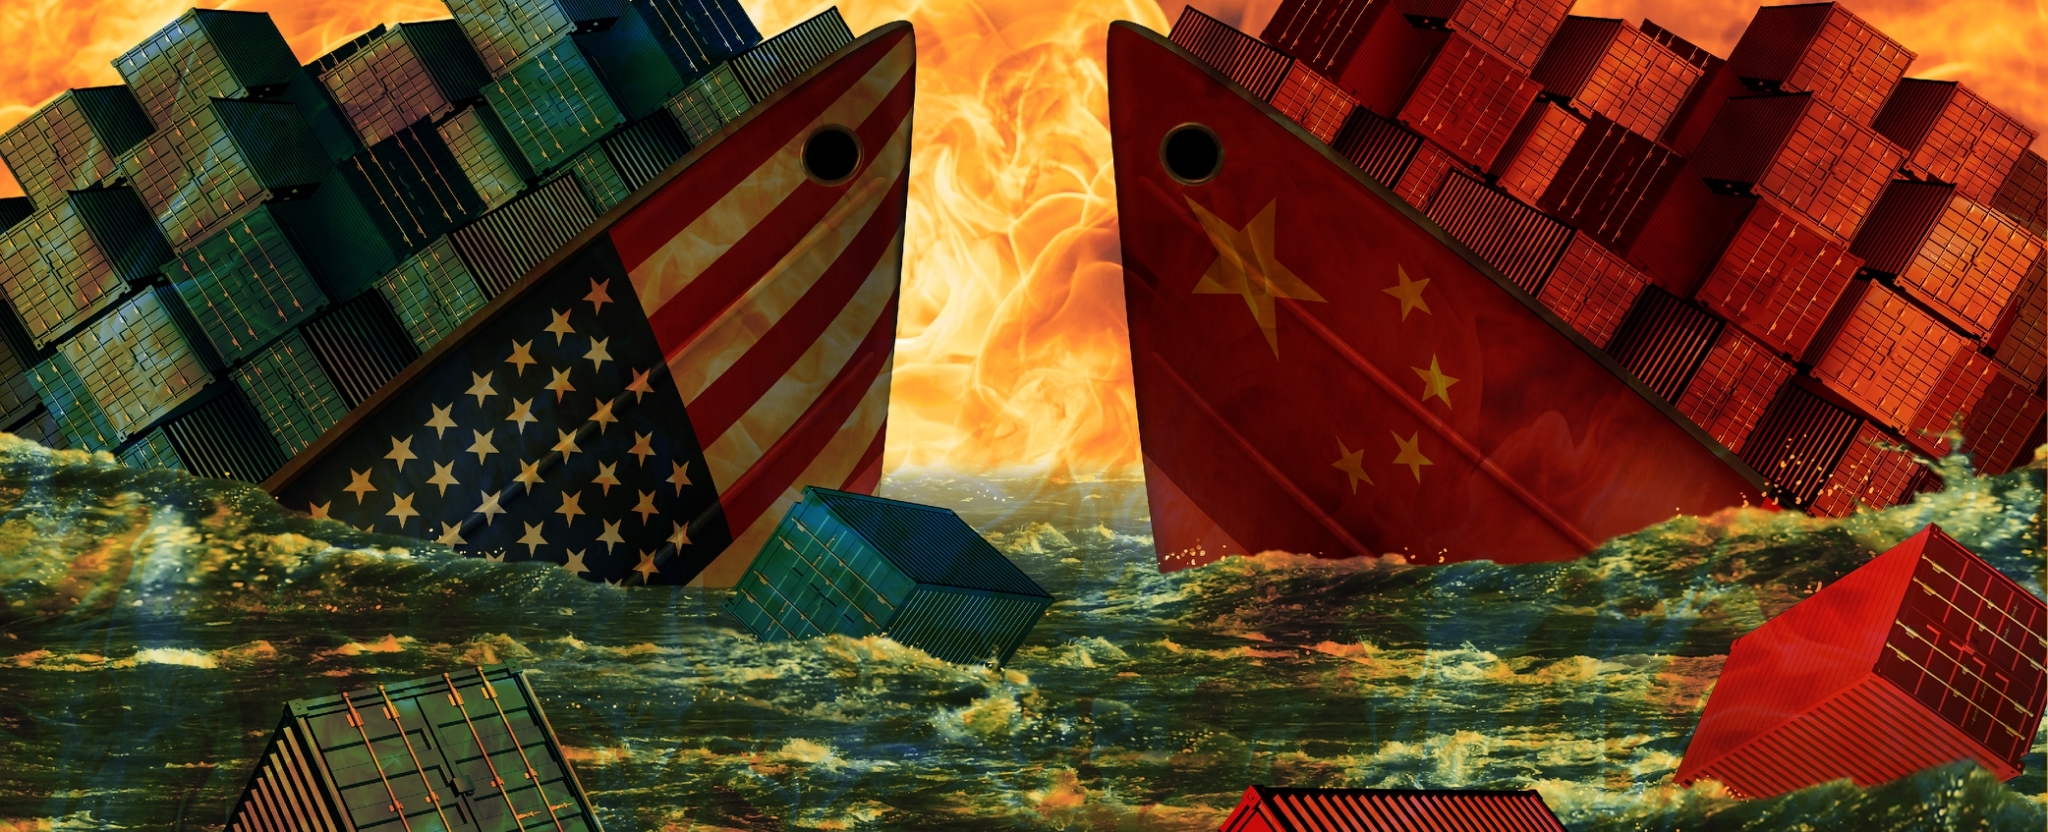 สหรัฐฯ และจีนบรรลุข้อตกลงการค้าเฟสแรก